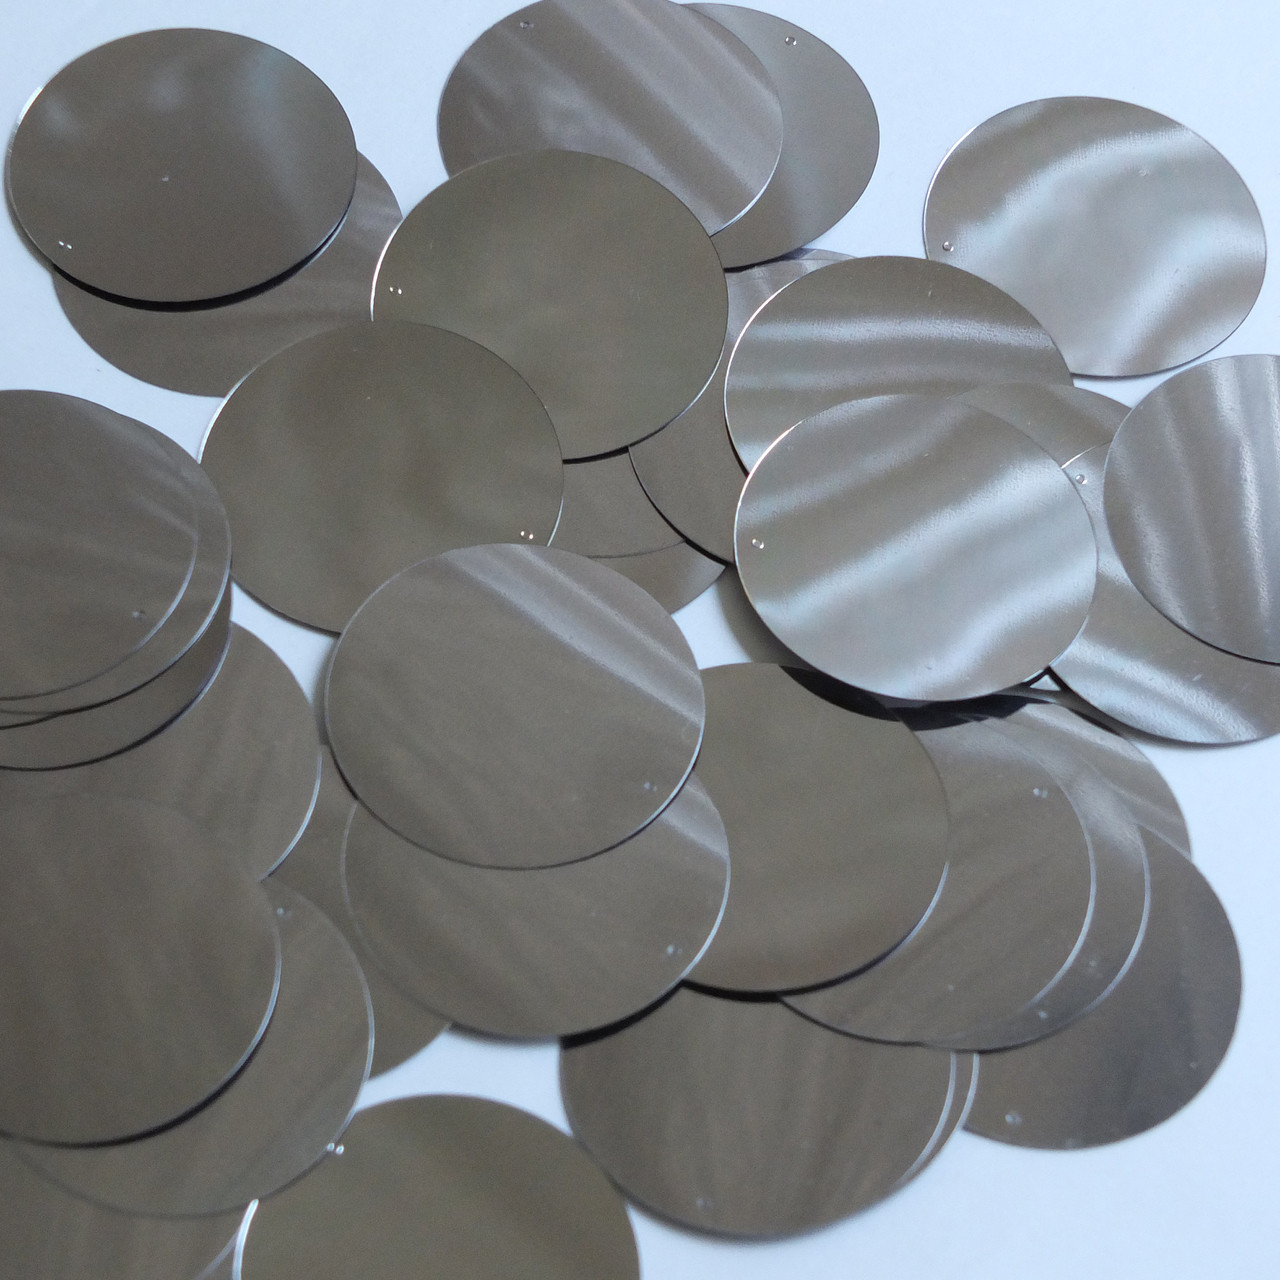 Round Sequin 40mm Hematite Shiny Gray Metallic